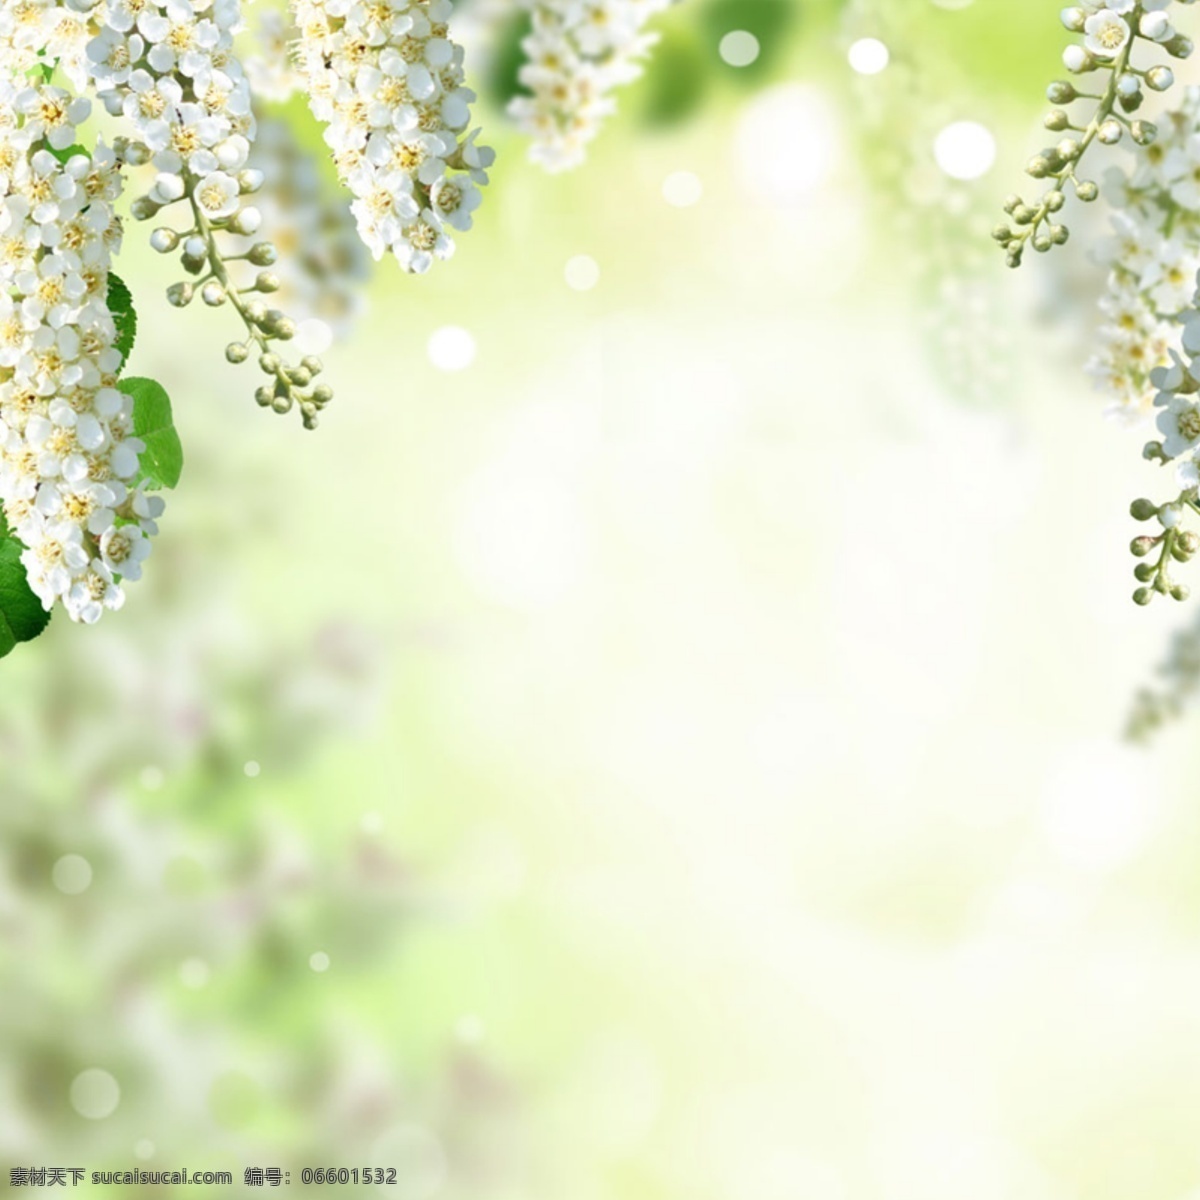 清新 唯美 白色 花朵 背景 图 简约 清爽 质感 女装 童装 护肤品 绿叶 渐变 蝴蝶